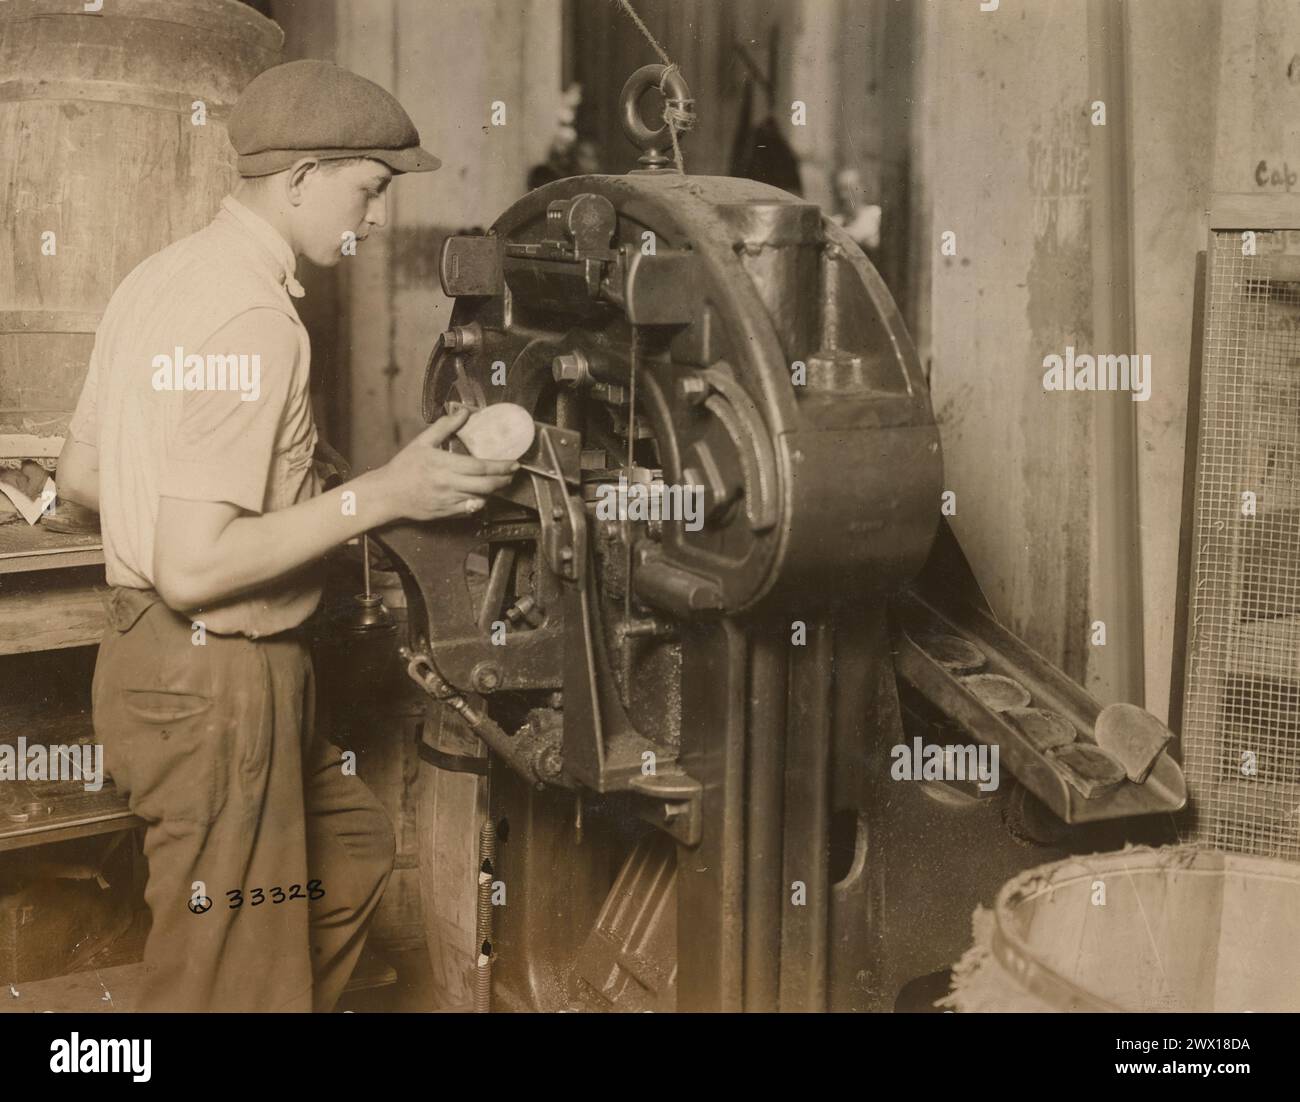 Herstellung von Schuhen der US-Armee – Mann, der eine Maschine bedient, die fünf Tonnen hydraulischen Druck auf die montierten Fersen ausübt, um sie richtig zusammenzudrücken und in Form zu Formen. Rosenwasser and Brothers Inc., Long Island City, New York CA. 1918 Stockfoto